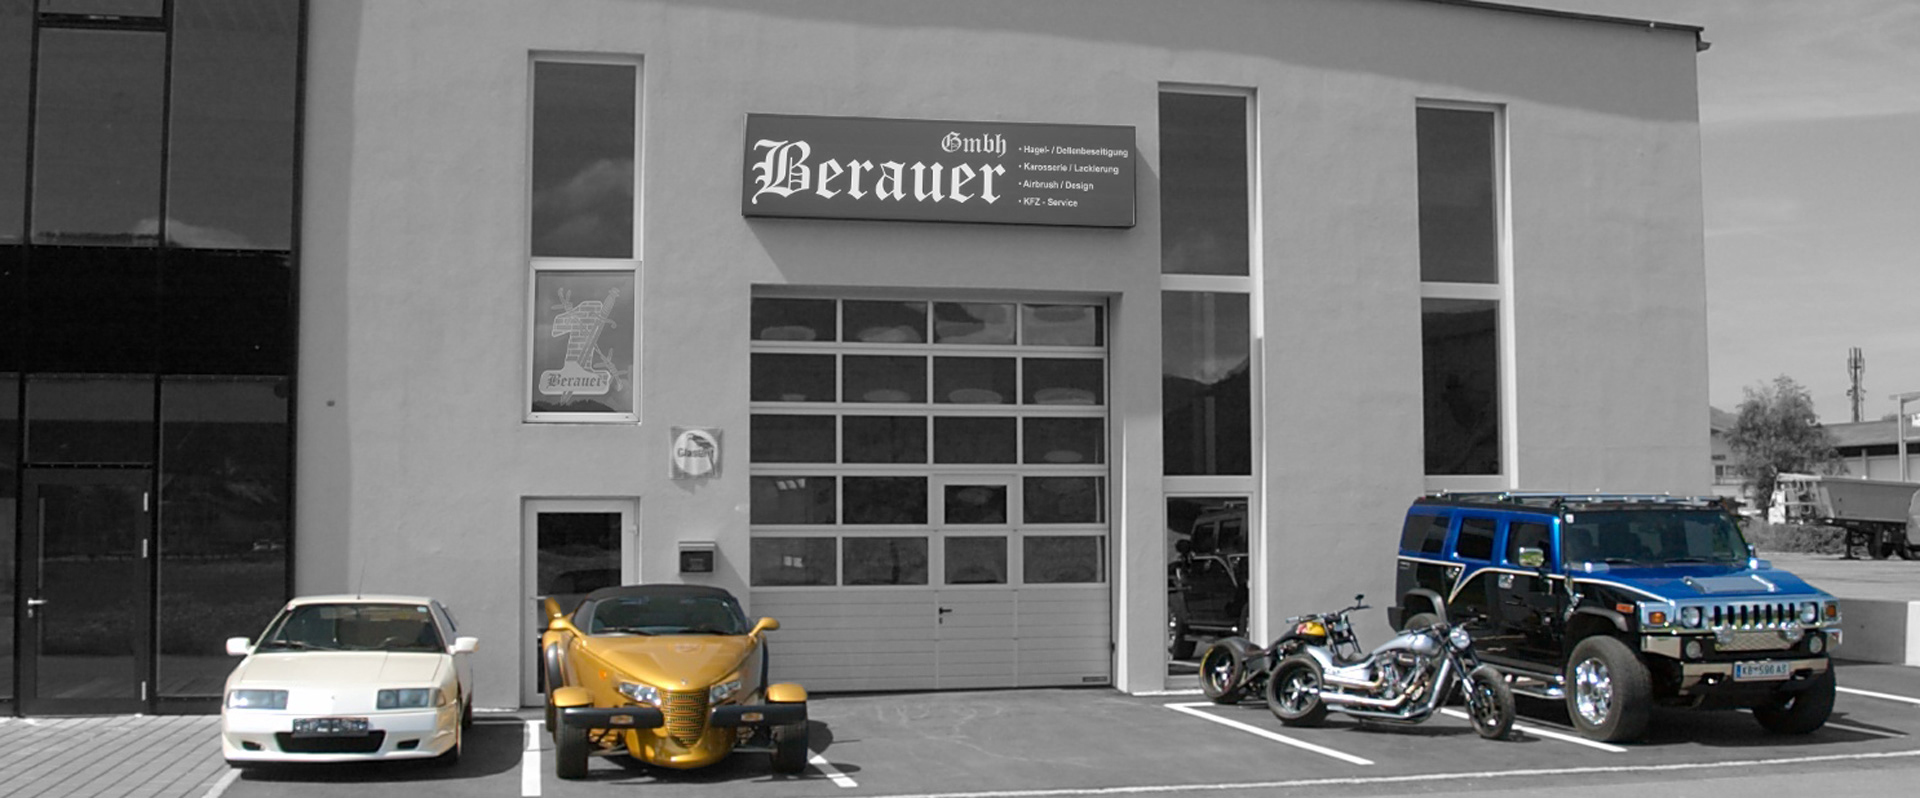 Berauer GmbH - St. Johann in Tirol